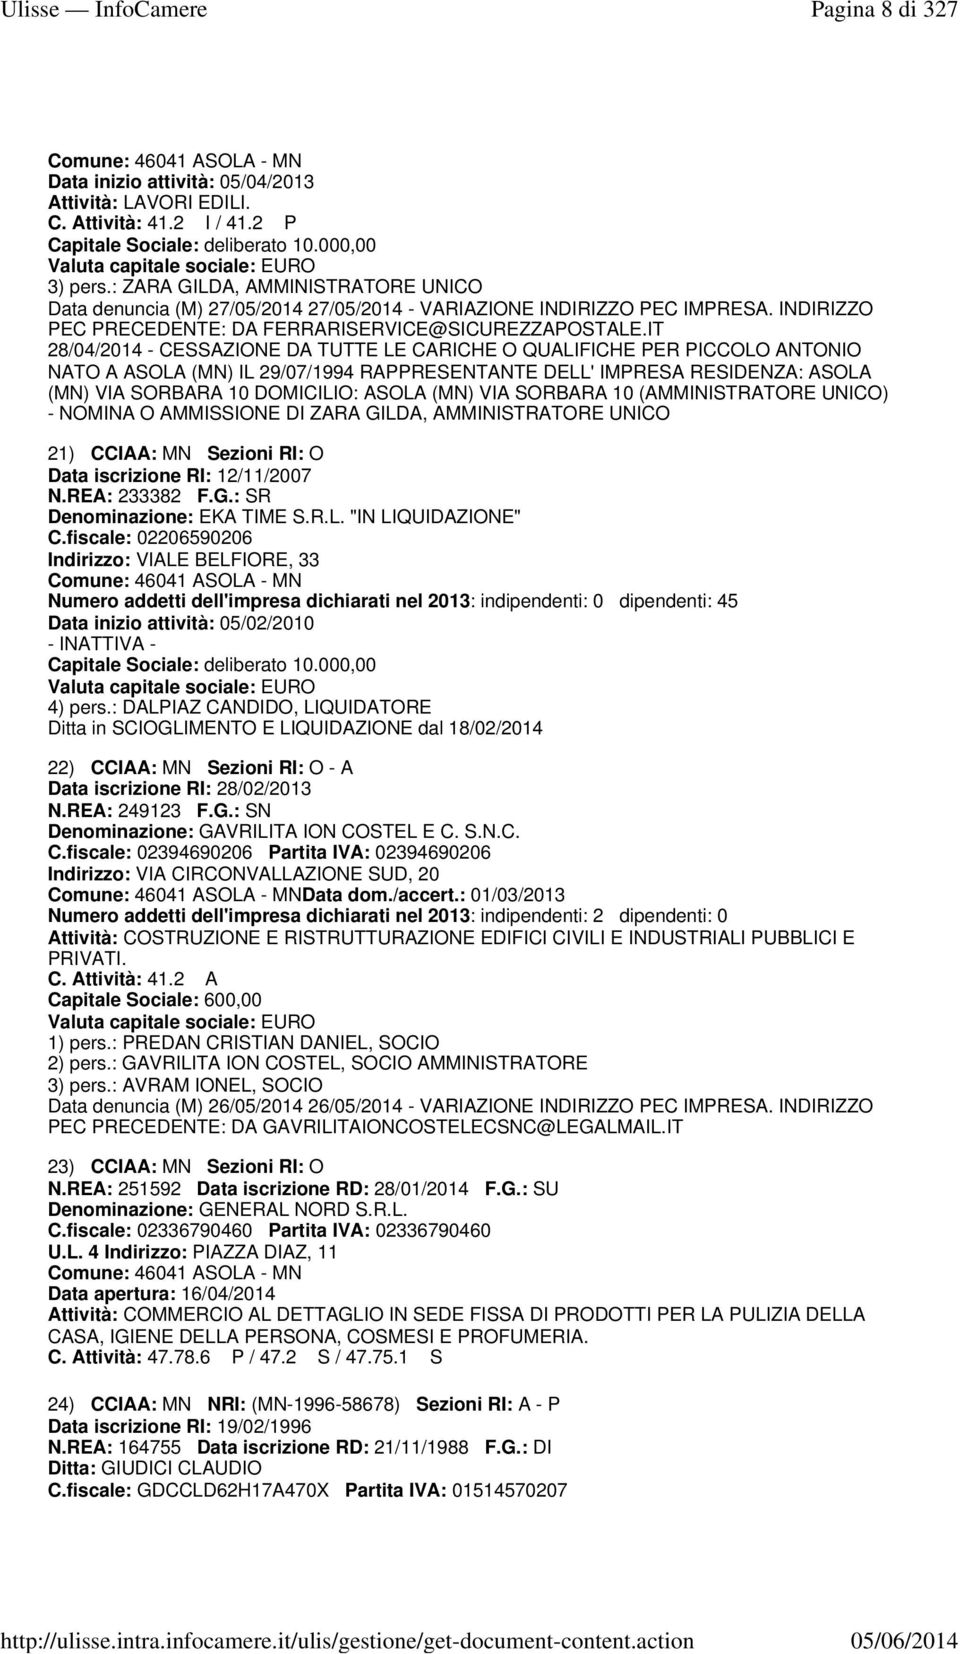 IT 28/04/2014 - CESSAZIONE DA TUTTE LE CARICHE O QUALIFICHE PER PICCOLO ANTONIO NATO A ASOLA (MN) IL 29/07/1994 RAPPRESENTANTE DELL' IMPRESA RESIDENZA: ASOLA (MN) VIA SORBARA 10 DOMICILIO: ASOLA (MN)